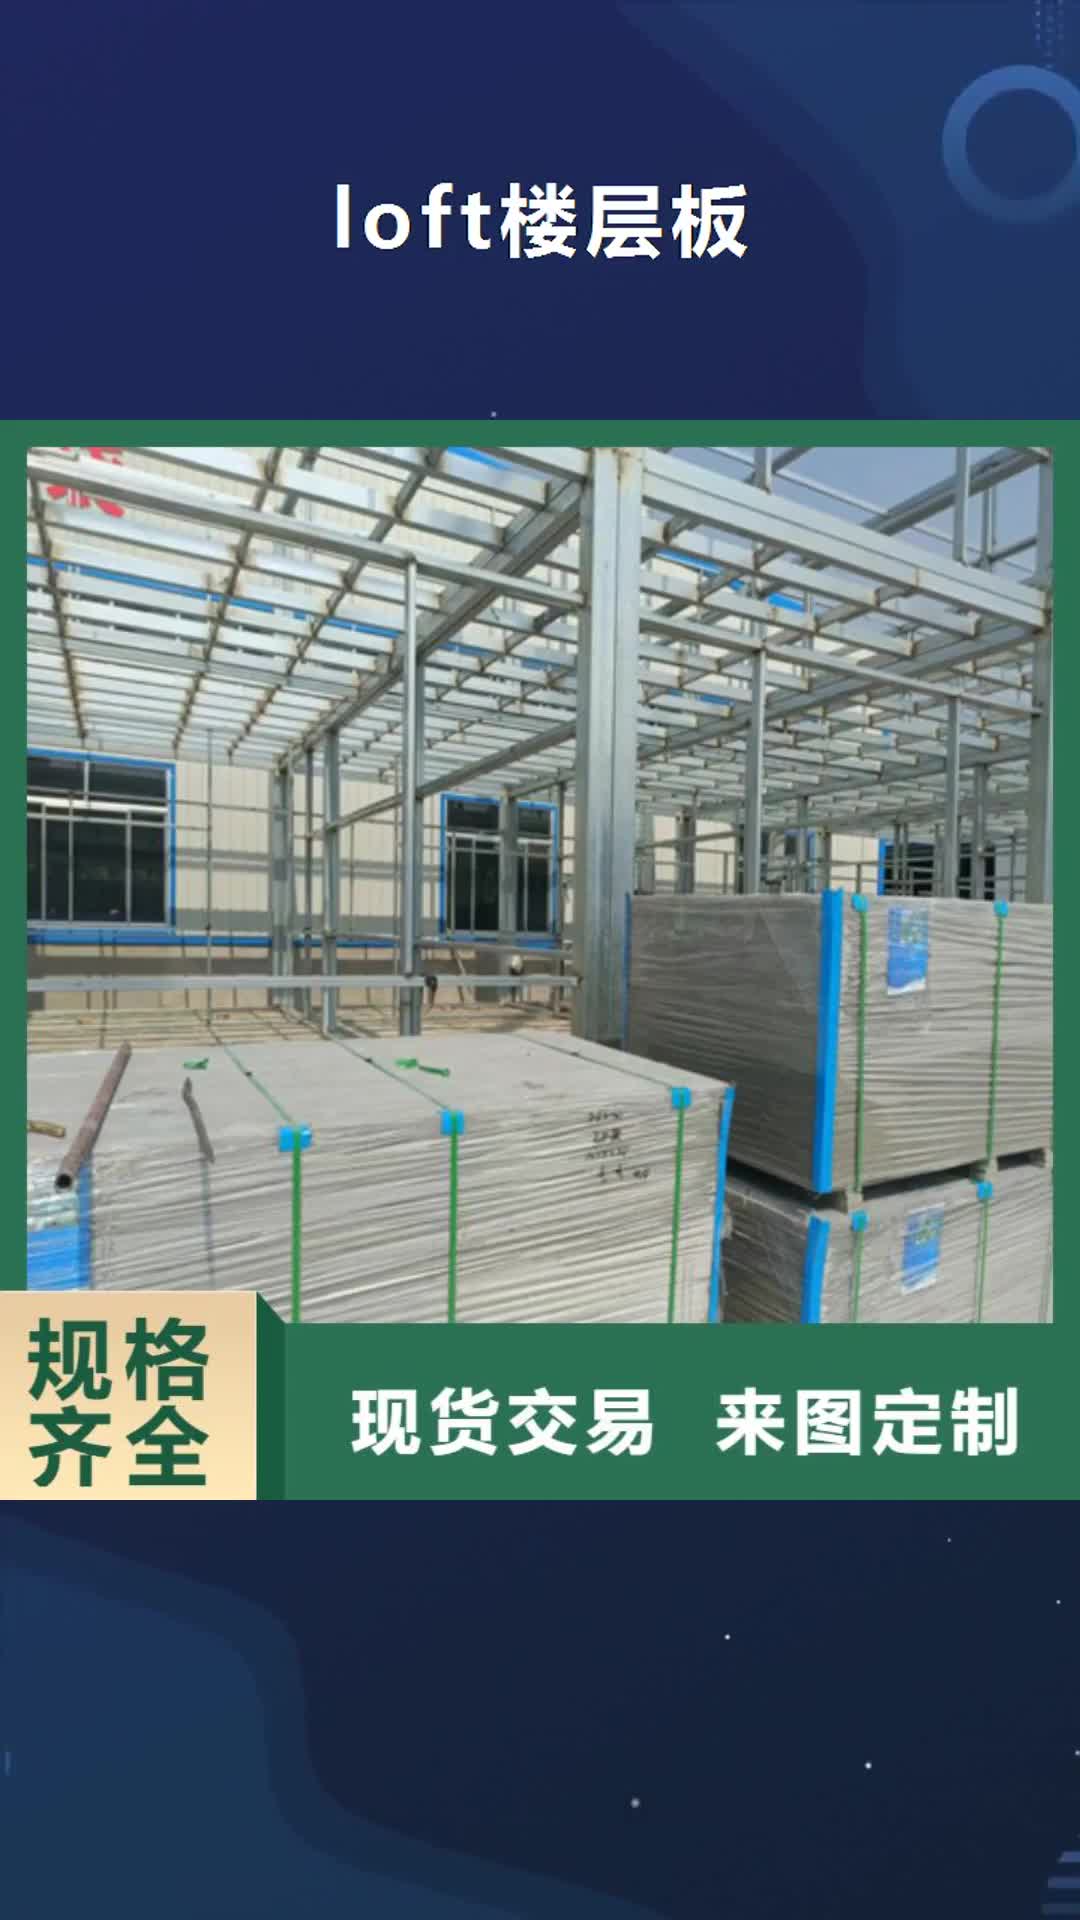 【上海 loft楼层板-纤维水泥板货源直供】